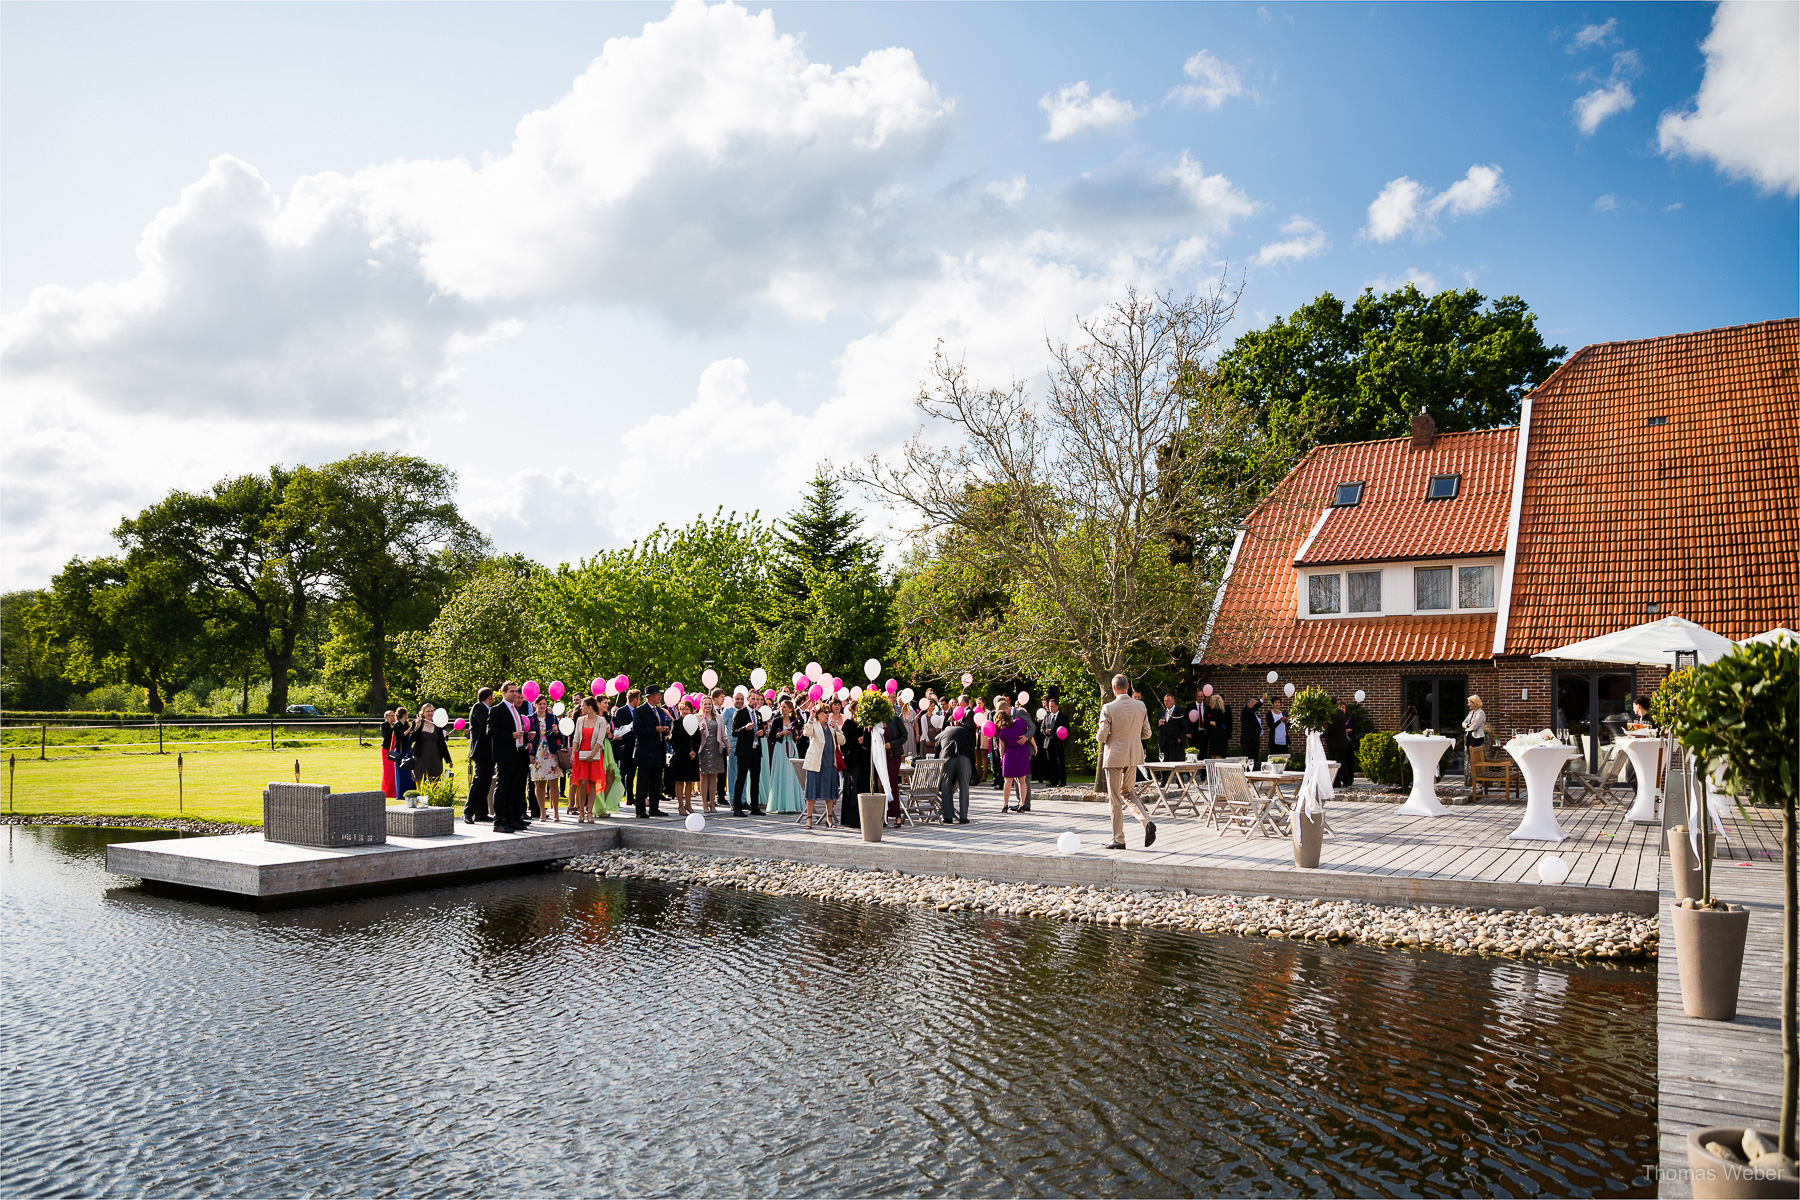 Hochzeit auf dem Gut Sandheide und Hochzeitsfeier in der Eventscheune St. Georg in Rastede, Hochzeitsfotograf Thomas Weber aus Oldenburg